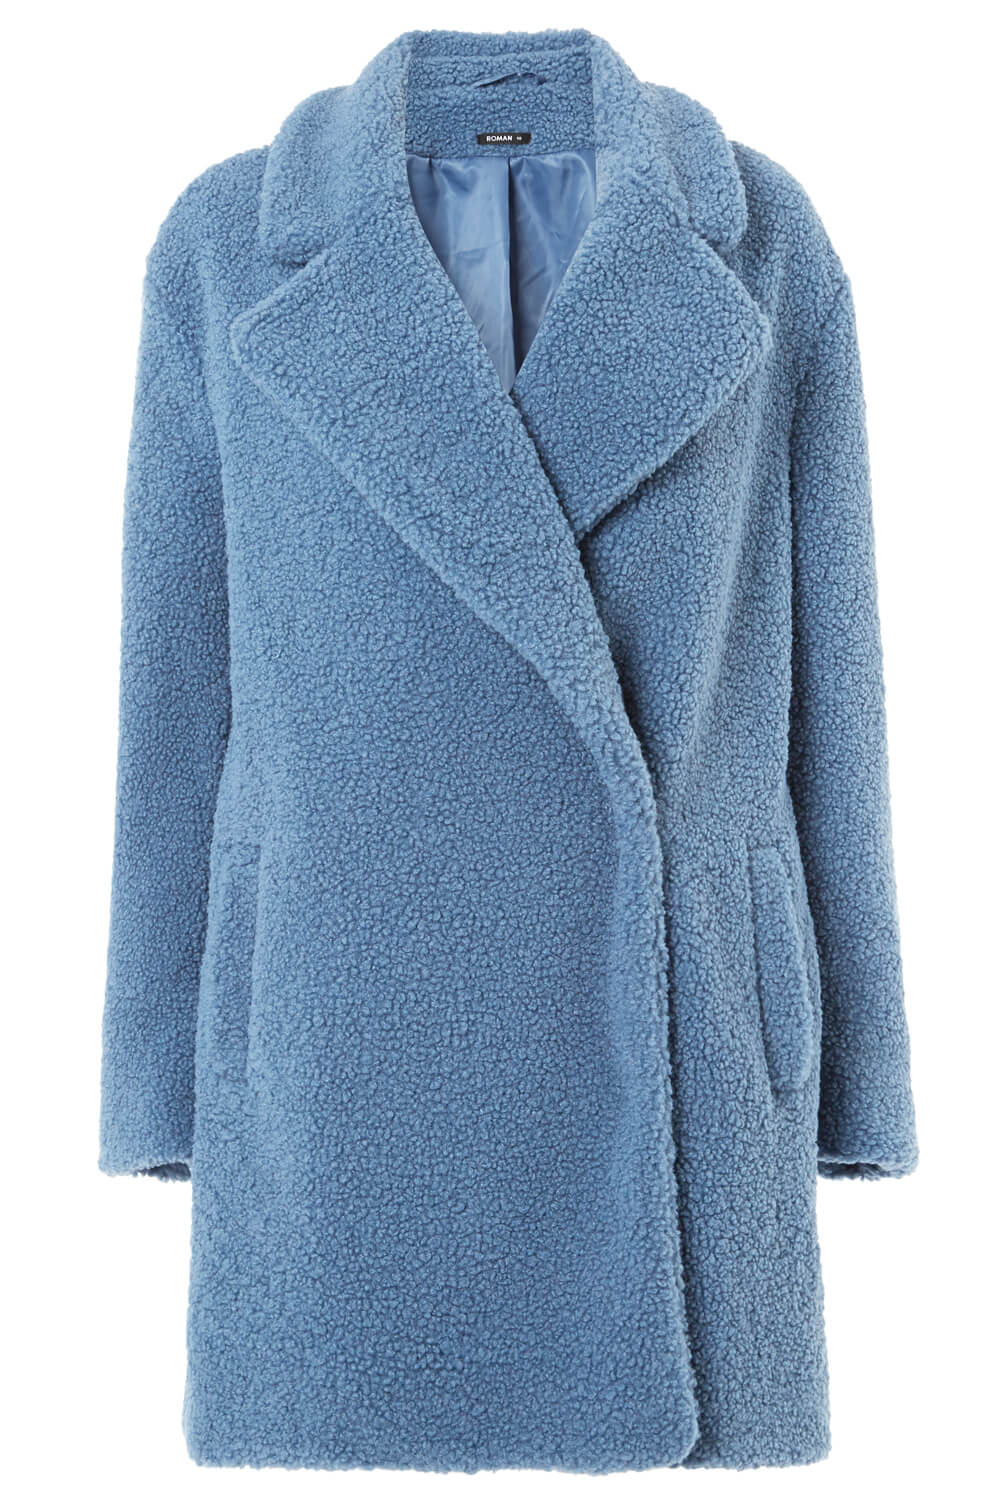 Steel Blue Longline Soft Faux Fur Teddy Coat, Image 5 of 5